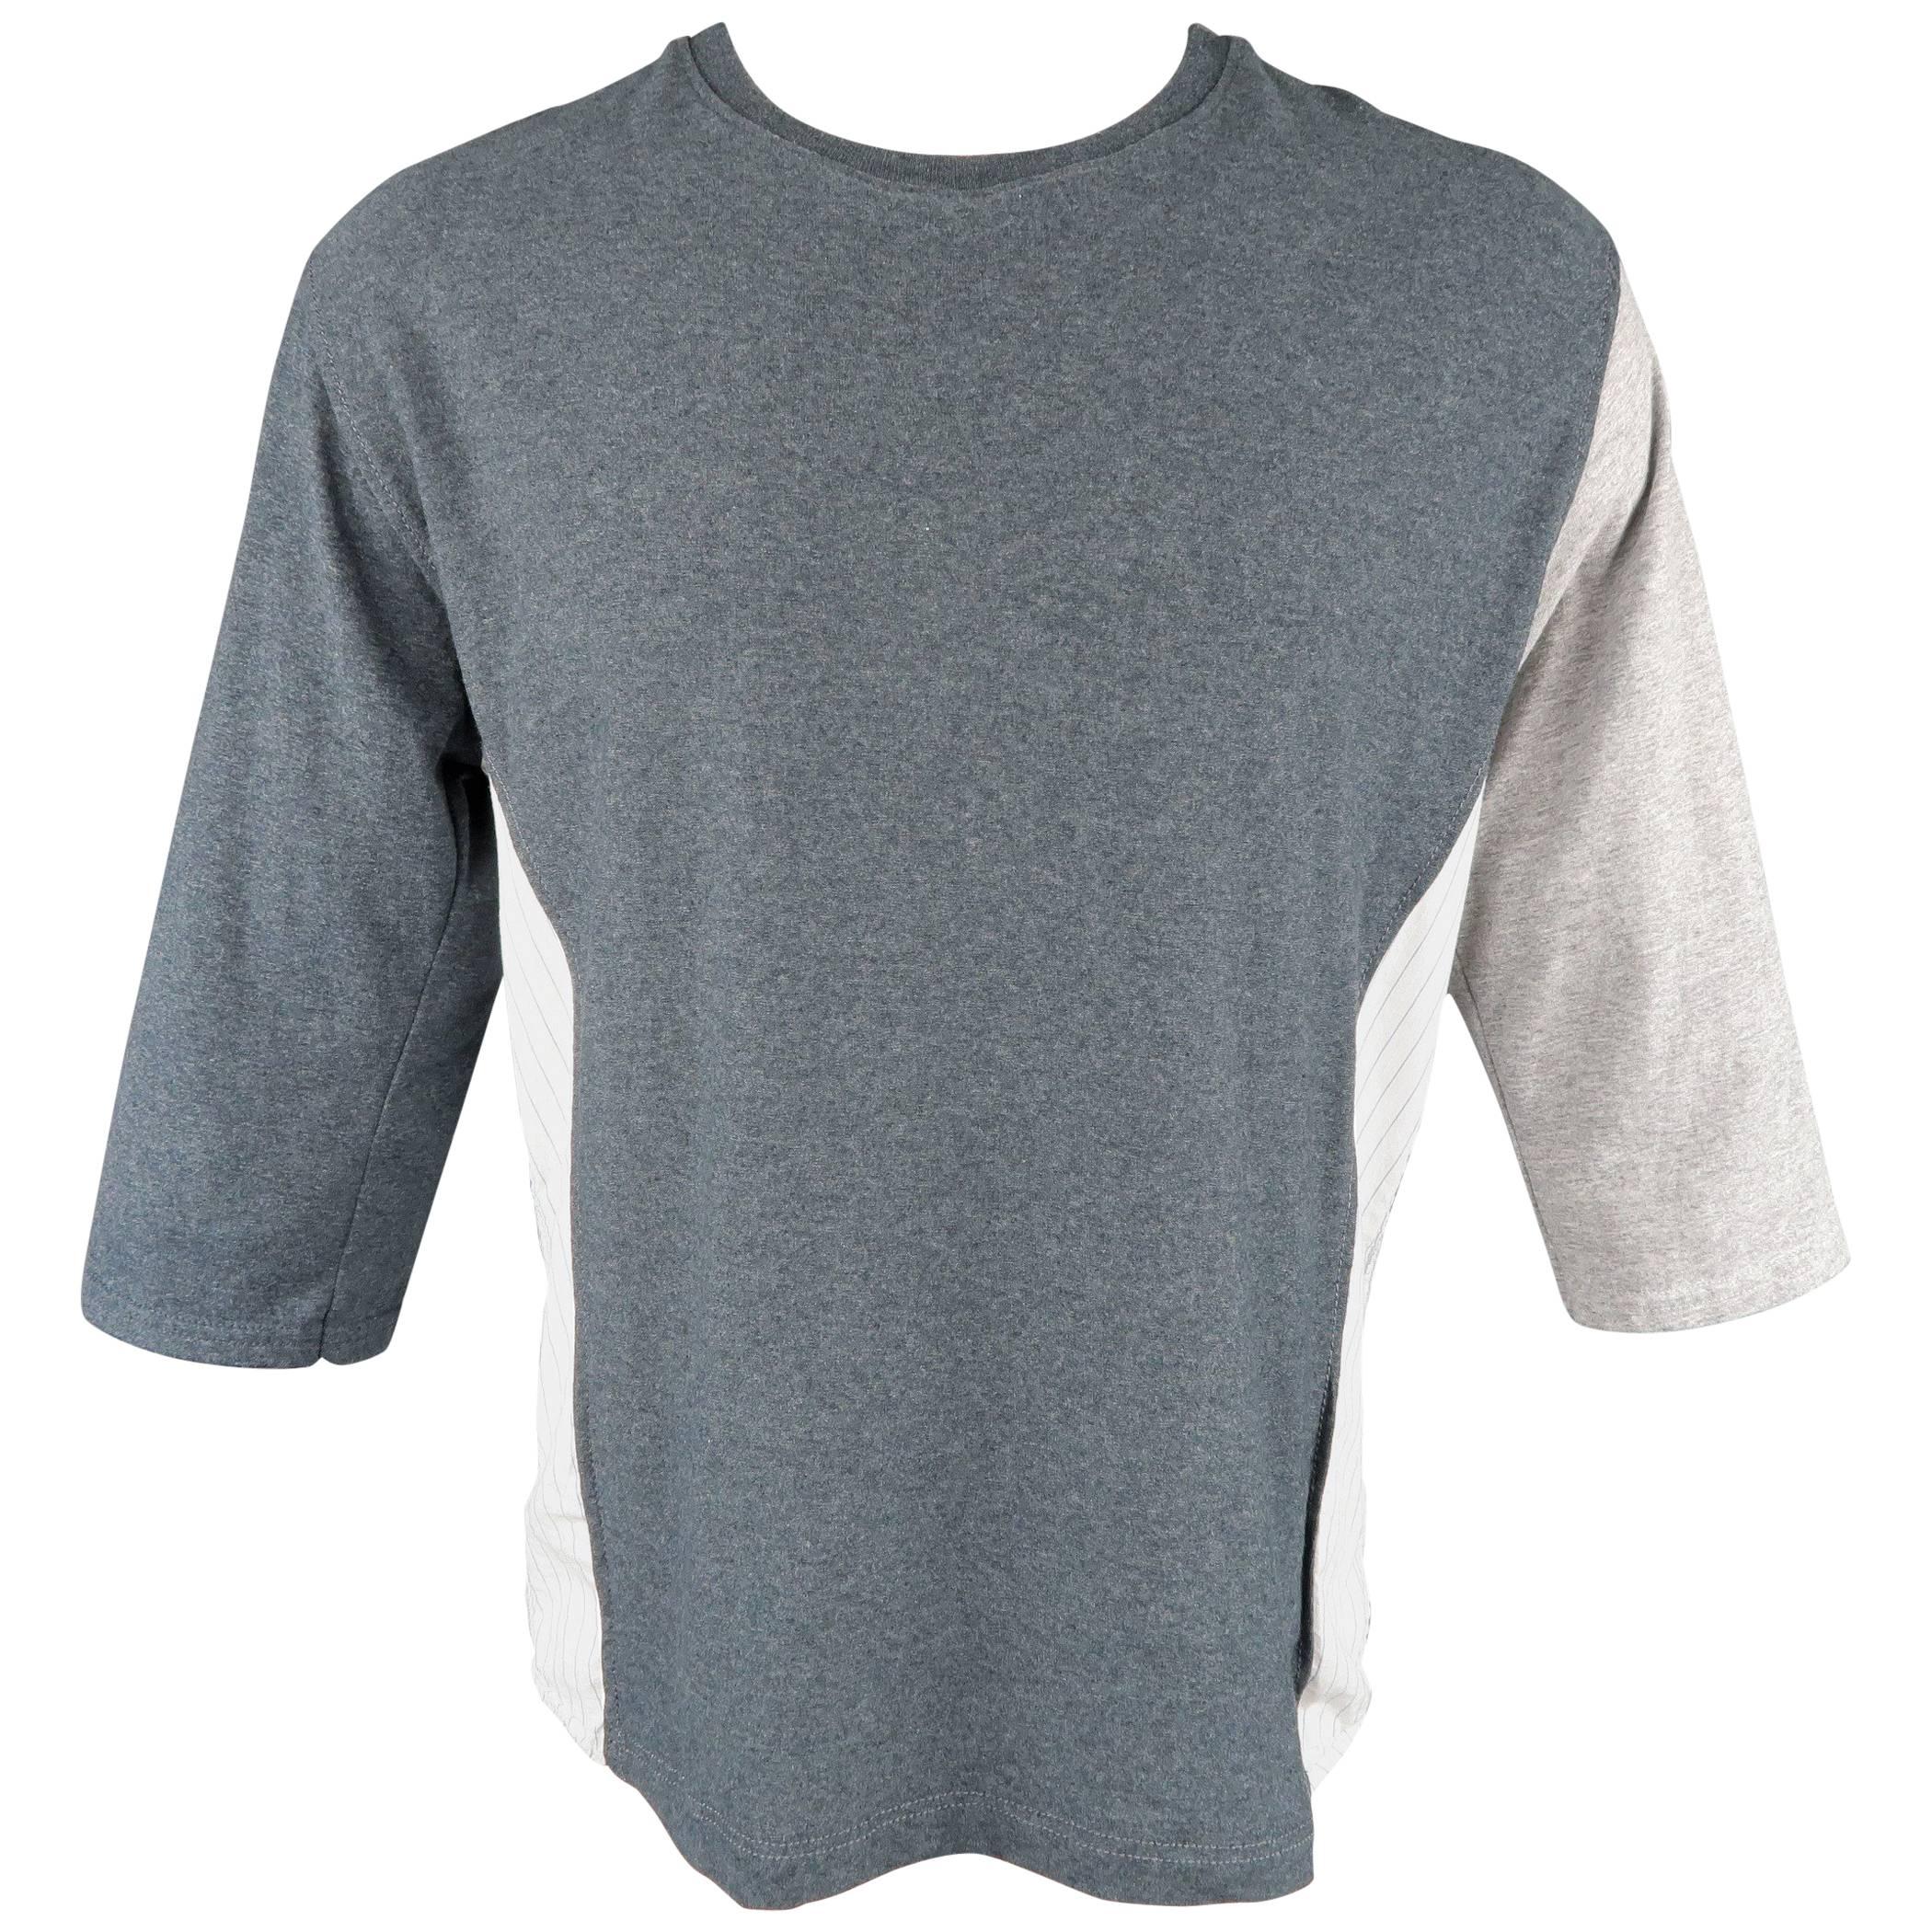 Men's COMME des GARCONS Size L Gray Mixed Fabrics Striped Cotton Panel Shirt